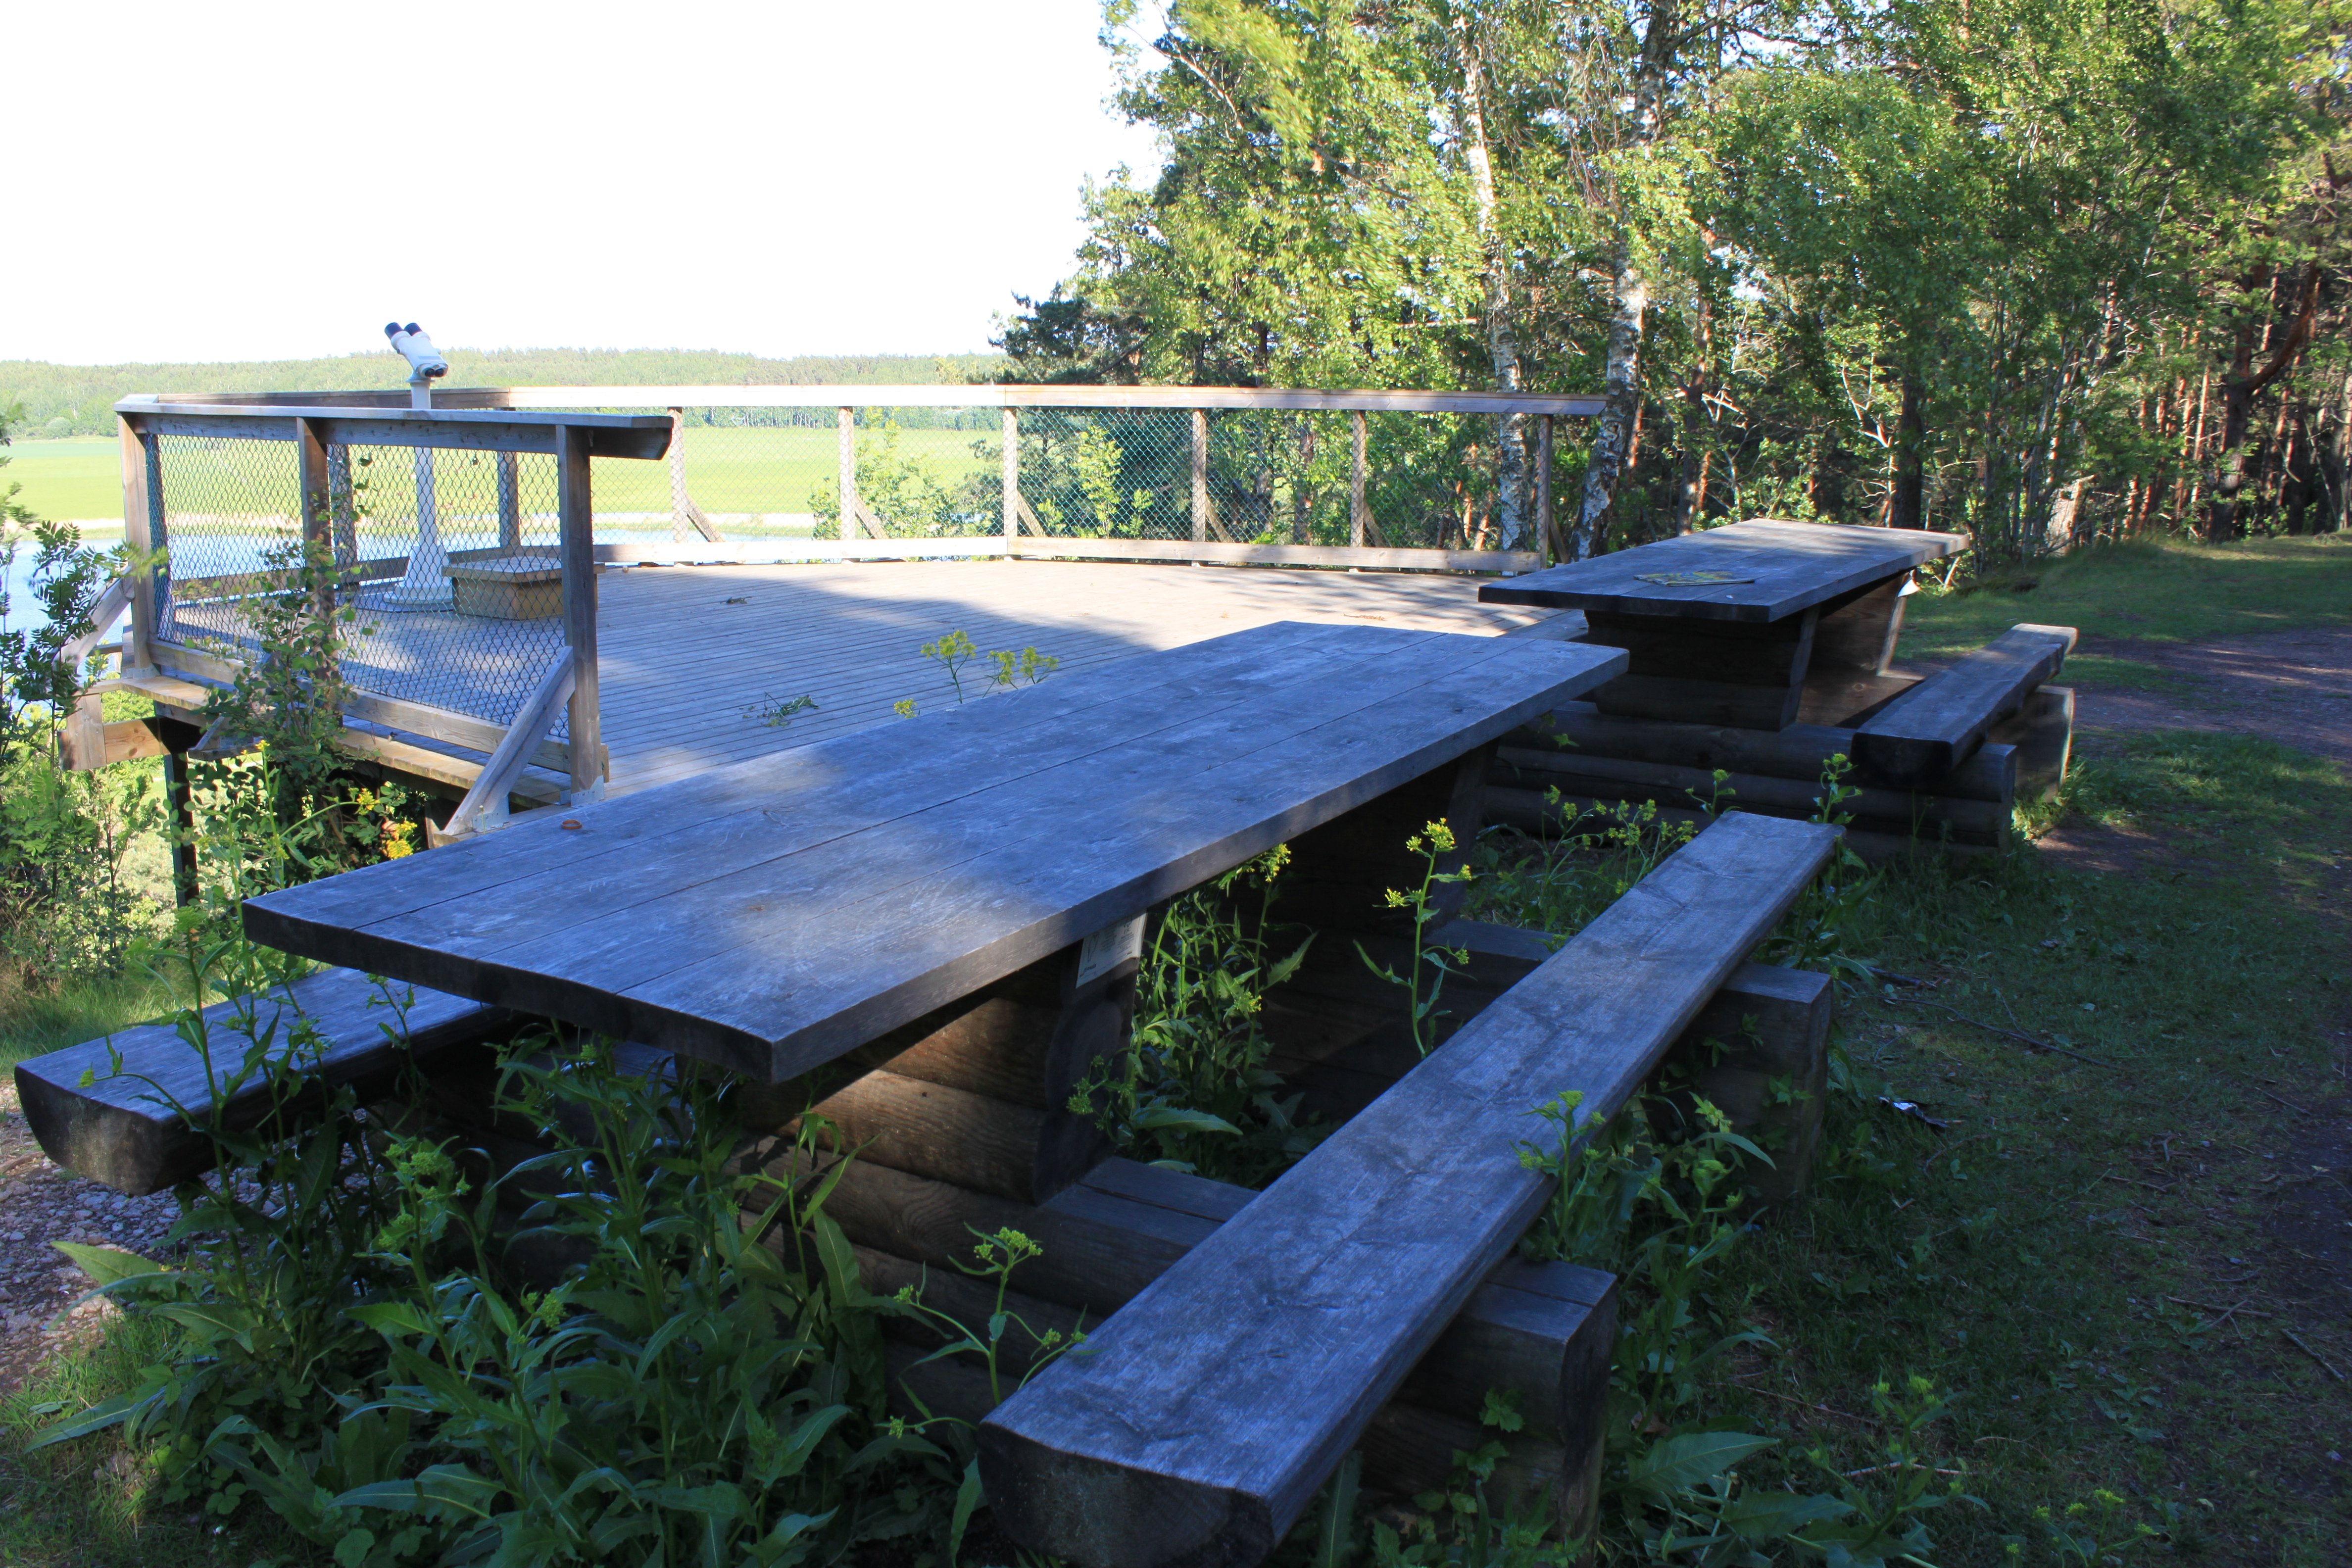 Två bänkbord står på gräsmark vid en rymlig utsiktsplattform med skyddsräcken runtom.